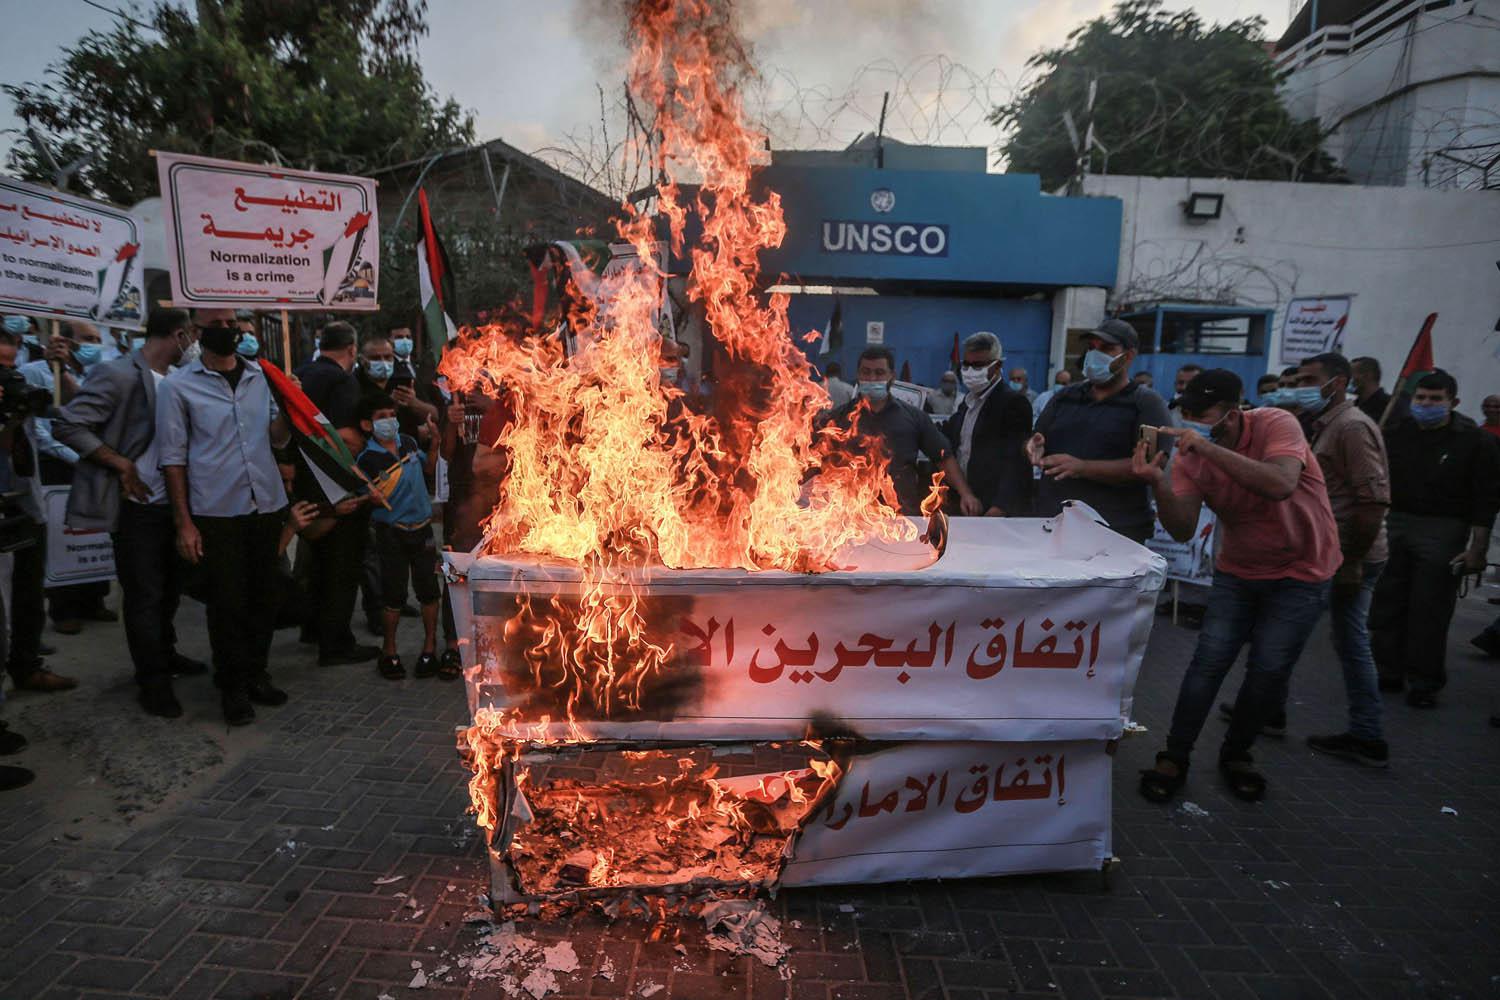 فلسطينيون يحرقون توابيت رمزية للاحتجاج على اتفاق السلام الاسرائيلي الاماراتي البحريني